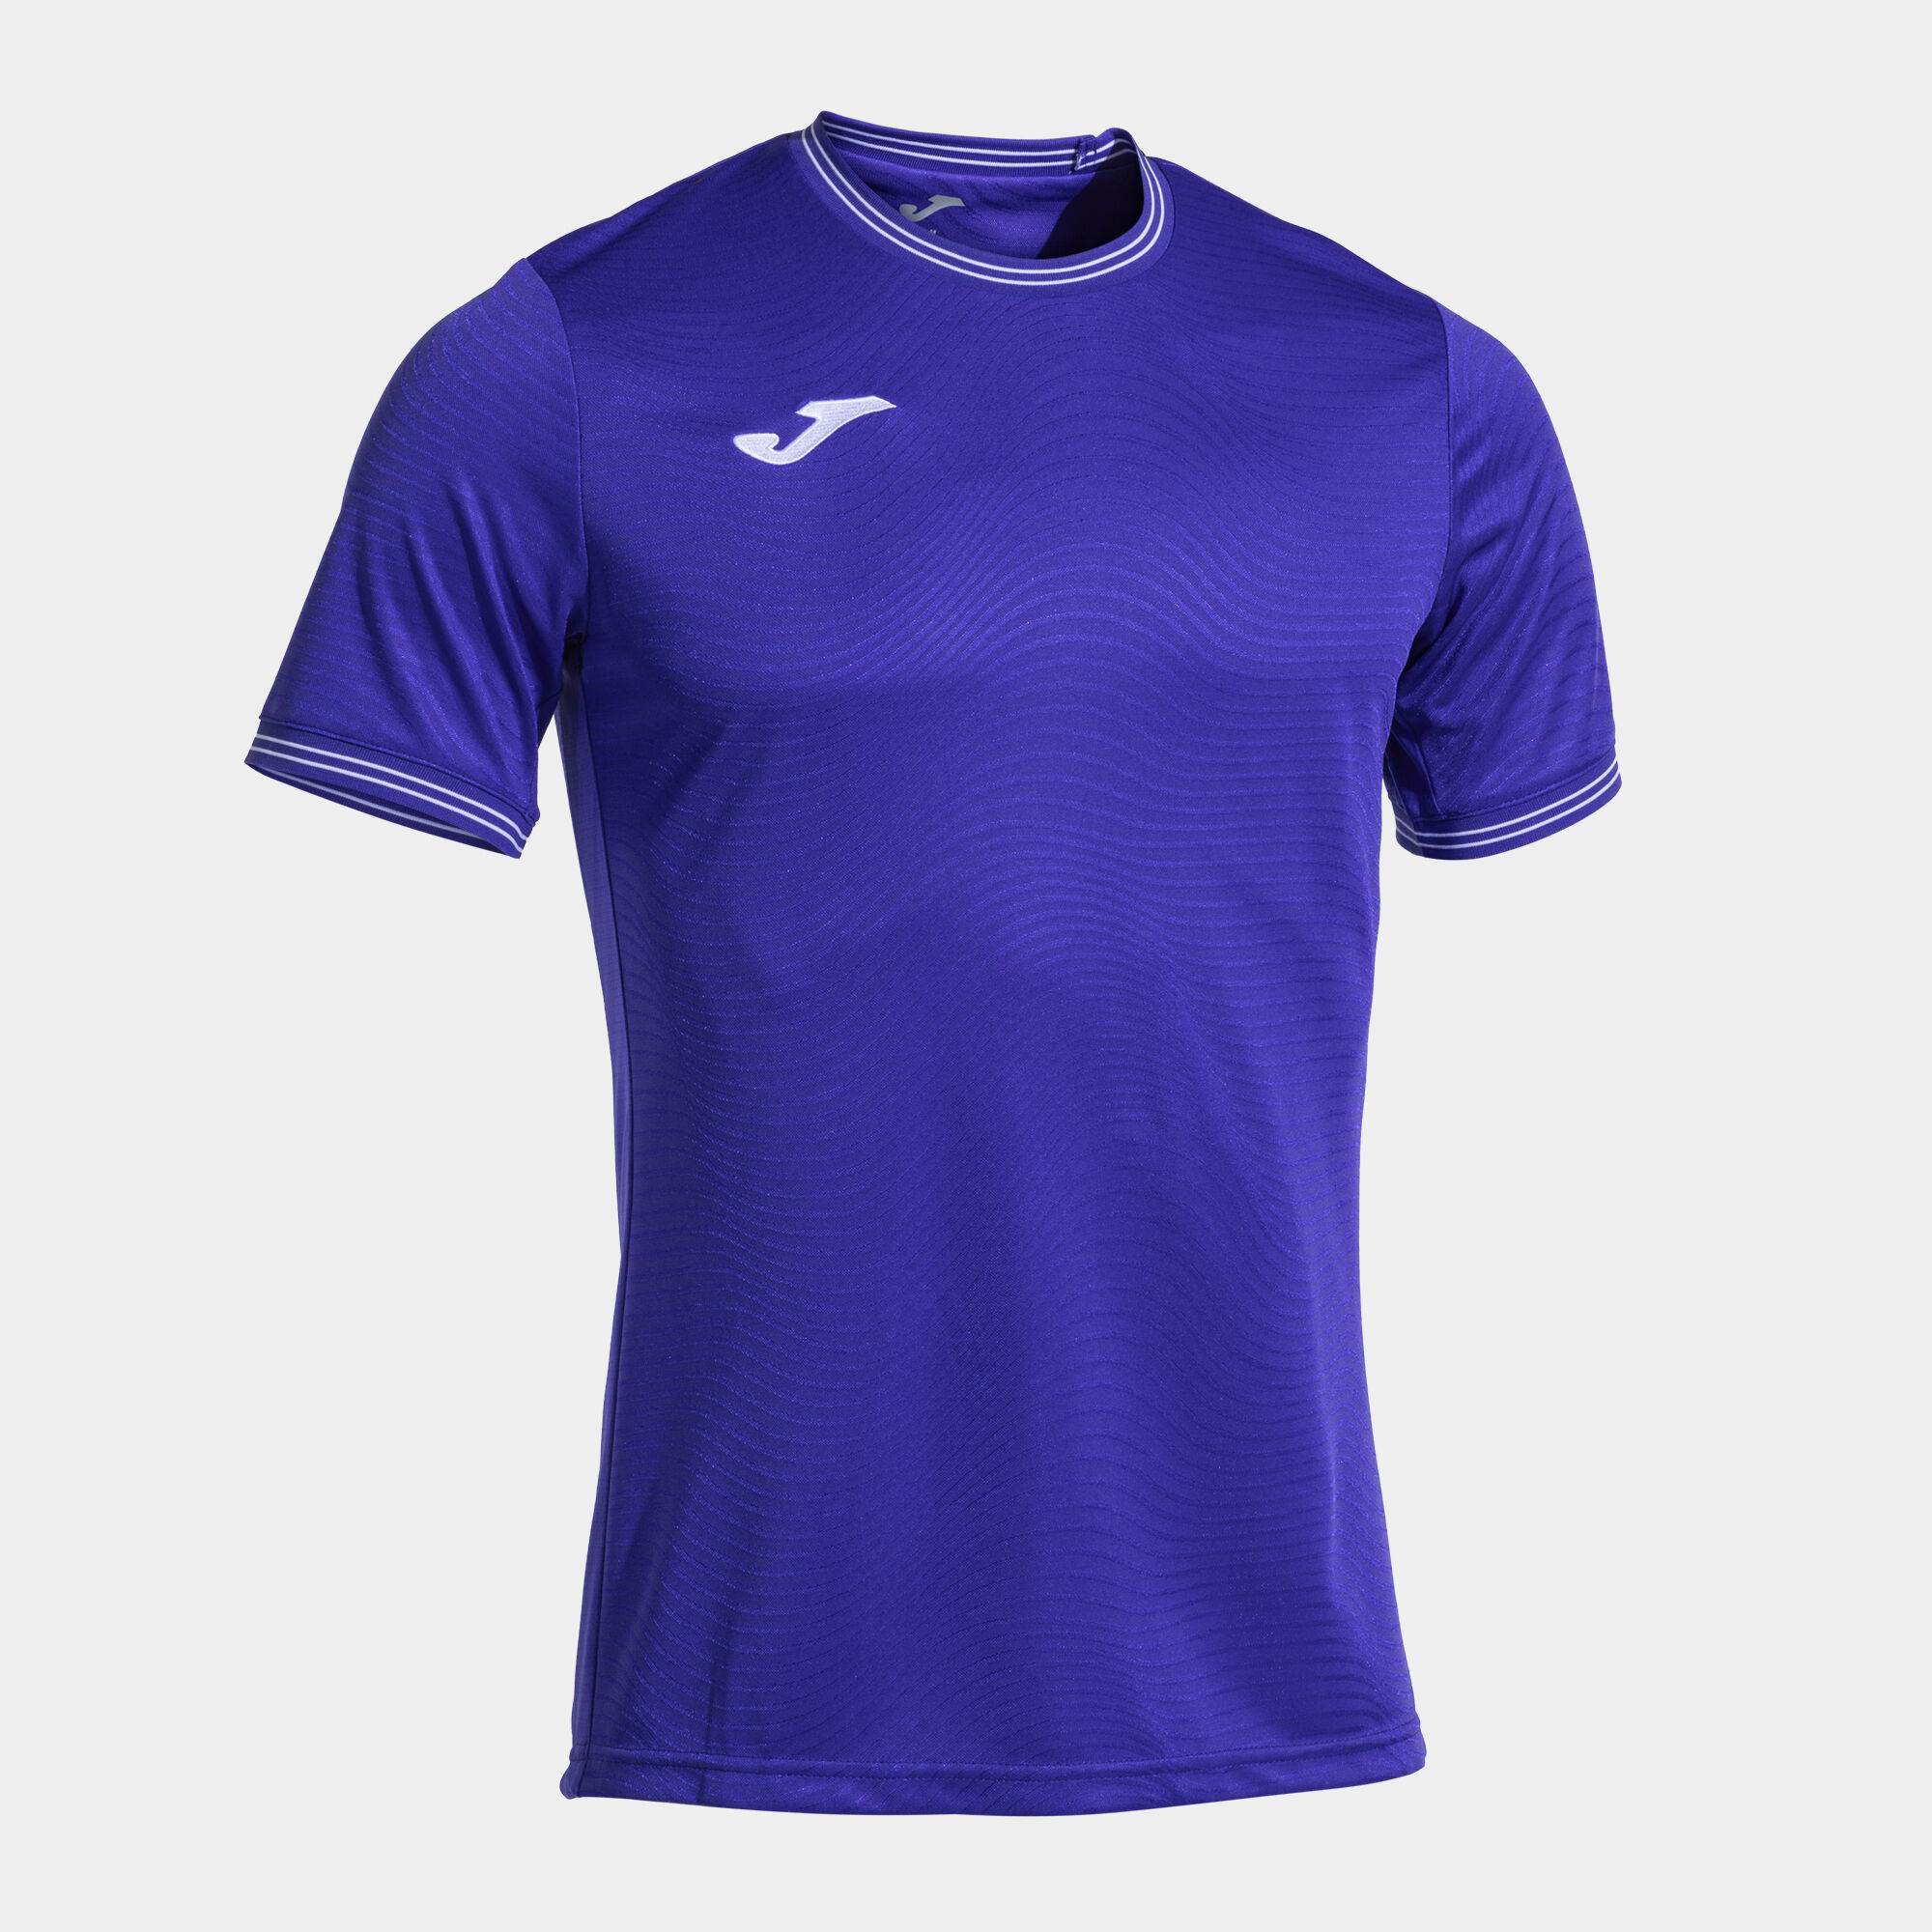 Shirt short sleeve man Toletum V violet